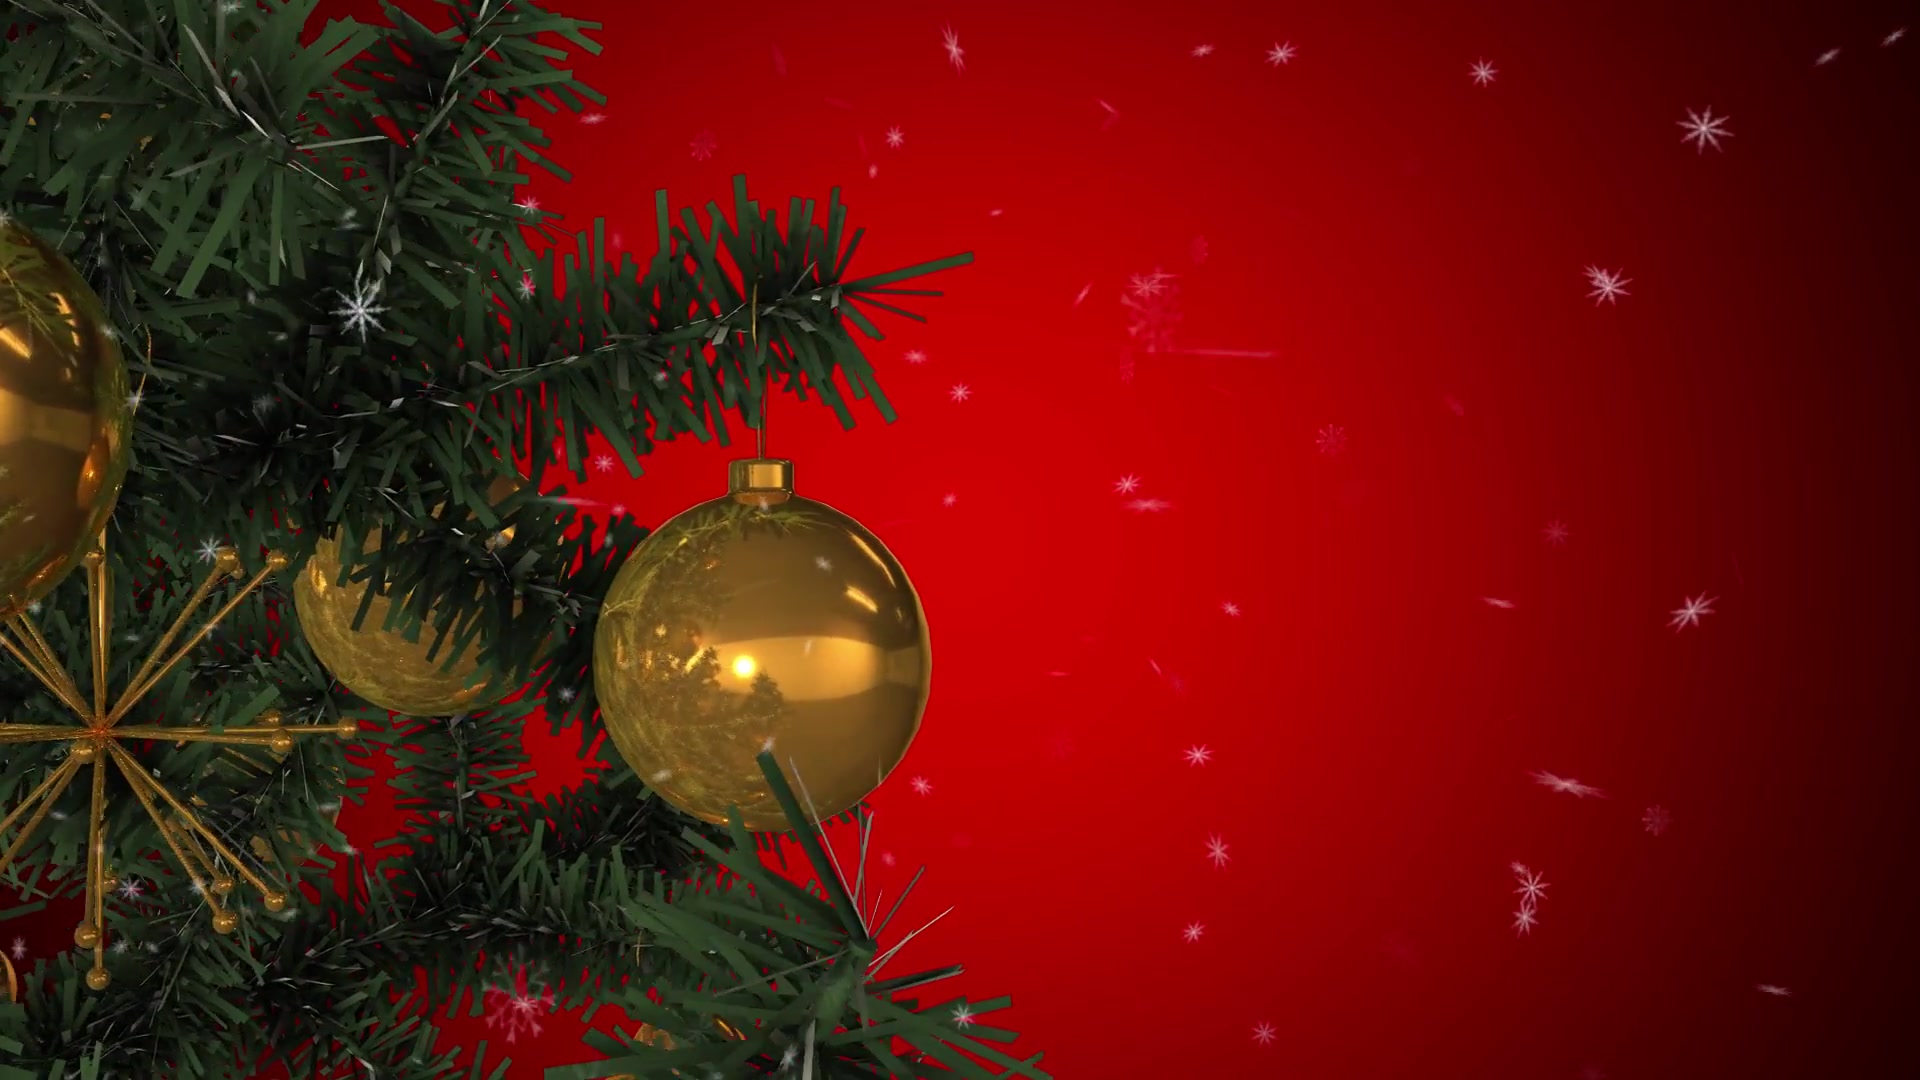 Rotating Christmas Tree Videohive 22935986 Motion Graphics Image 4